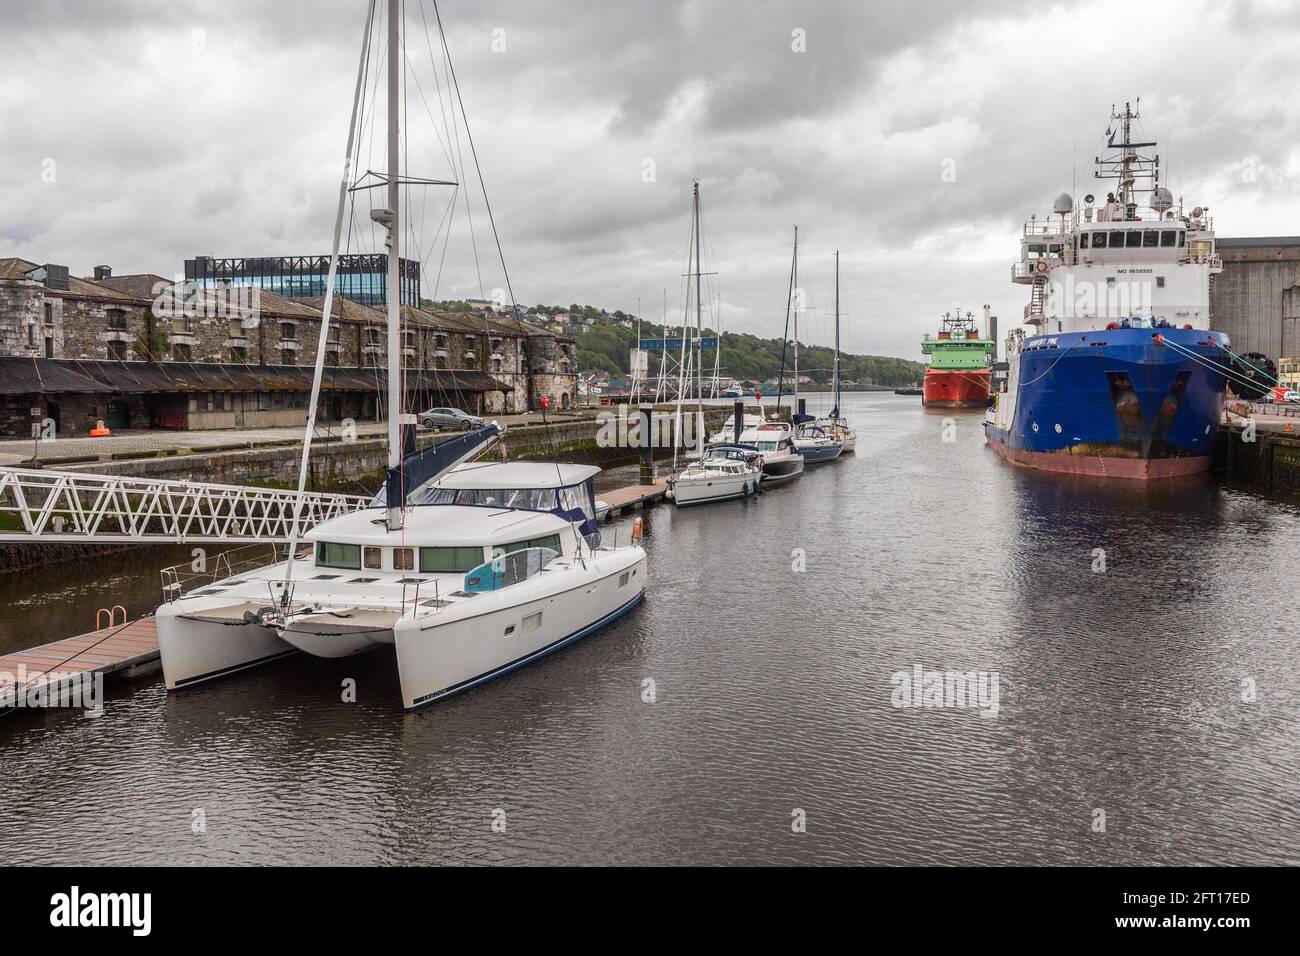 Cork, Irland. Mai 2021. Der Hafen von Cork war heute Morgen voll mit Vergnügungsyachten und Motorbooten, die in der Marina festgemacht wurden, sowie mit Fischerbooten und Handelsschiffen. Quelle: AG News/Alamy Live News Stockfoto